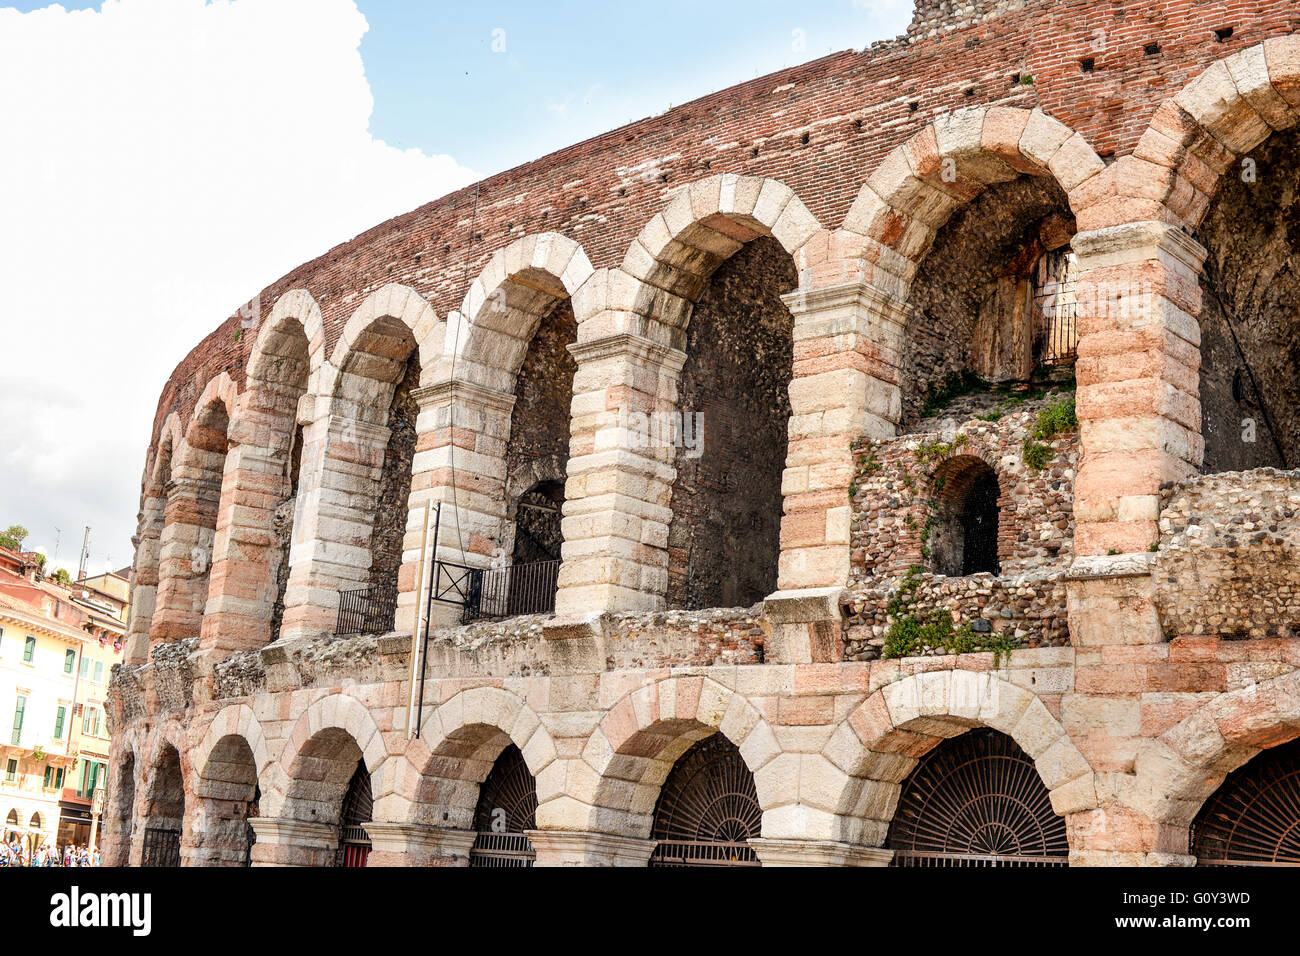 Close up of Arena di Verona amphitheater, Verona, Italy Stock Photo